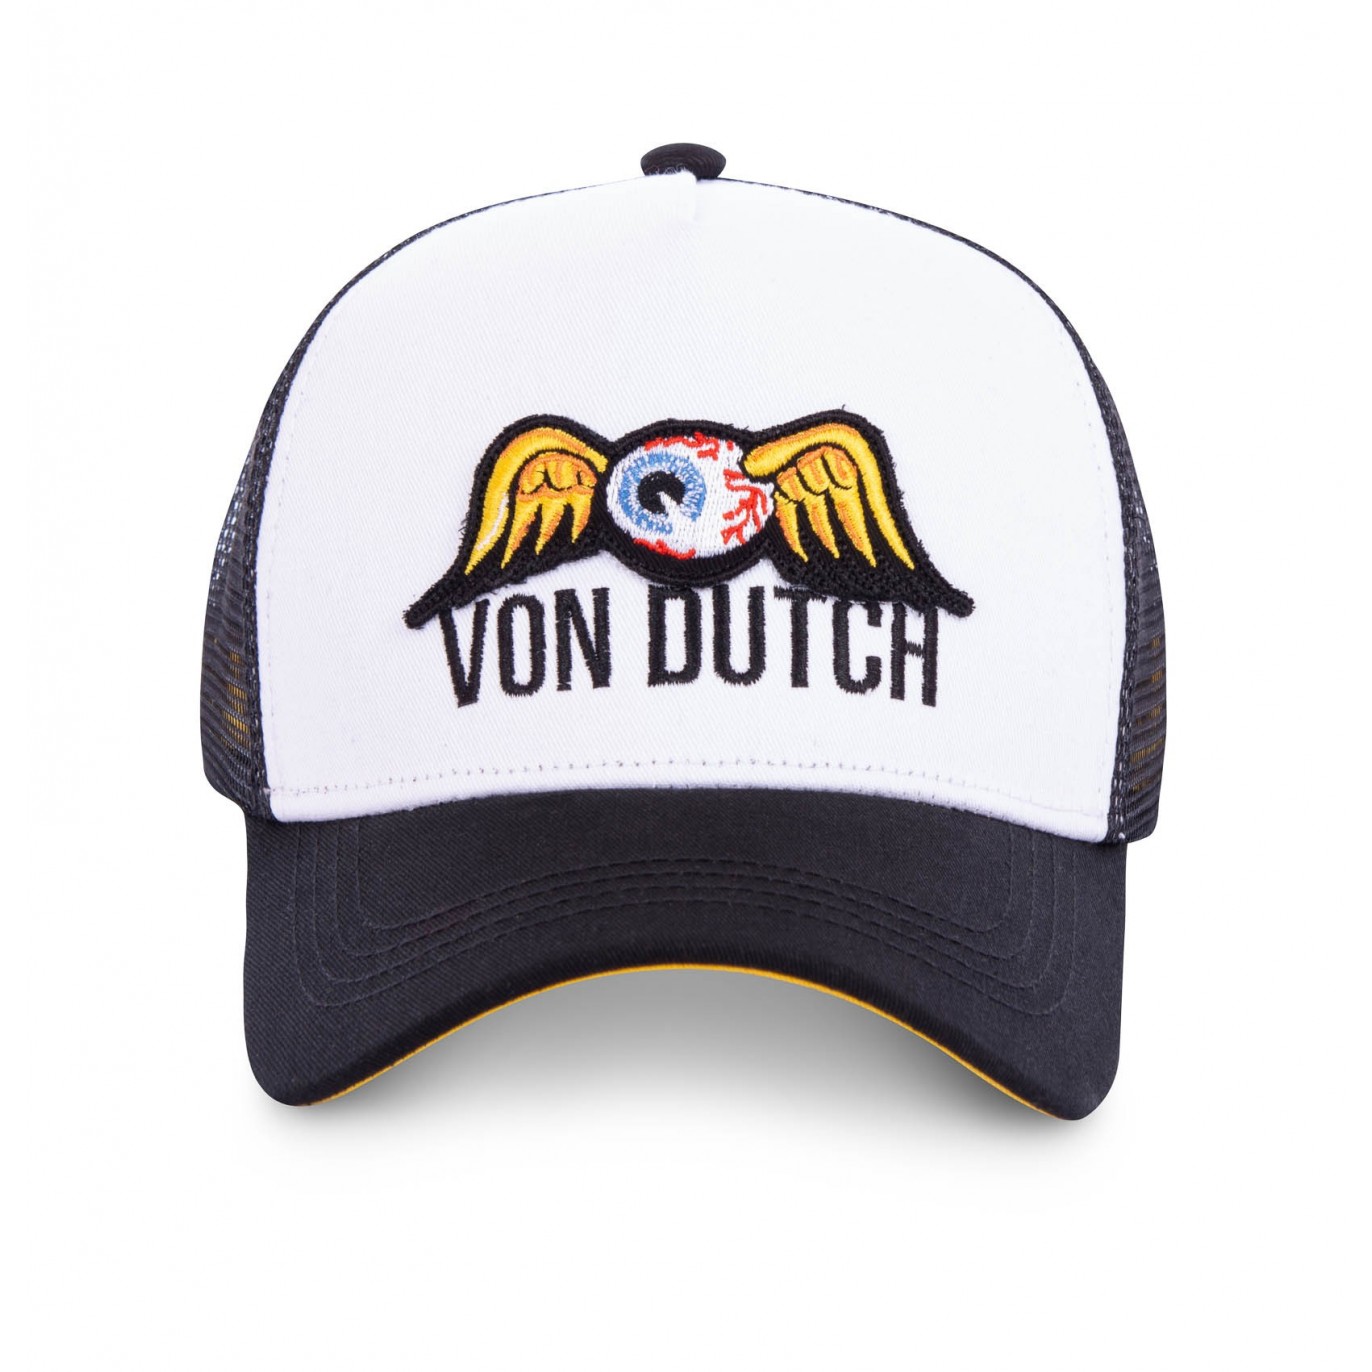 Casquette baseball filet Von Duth Lofb Noir - Von Dutch